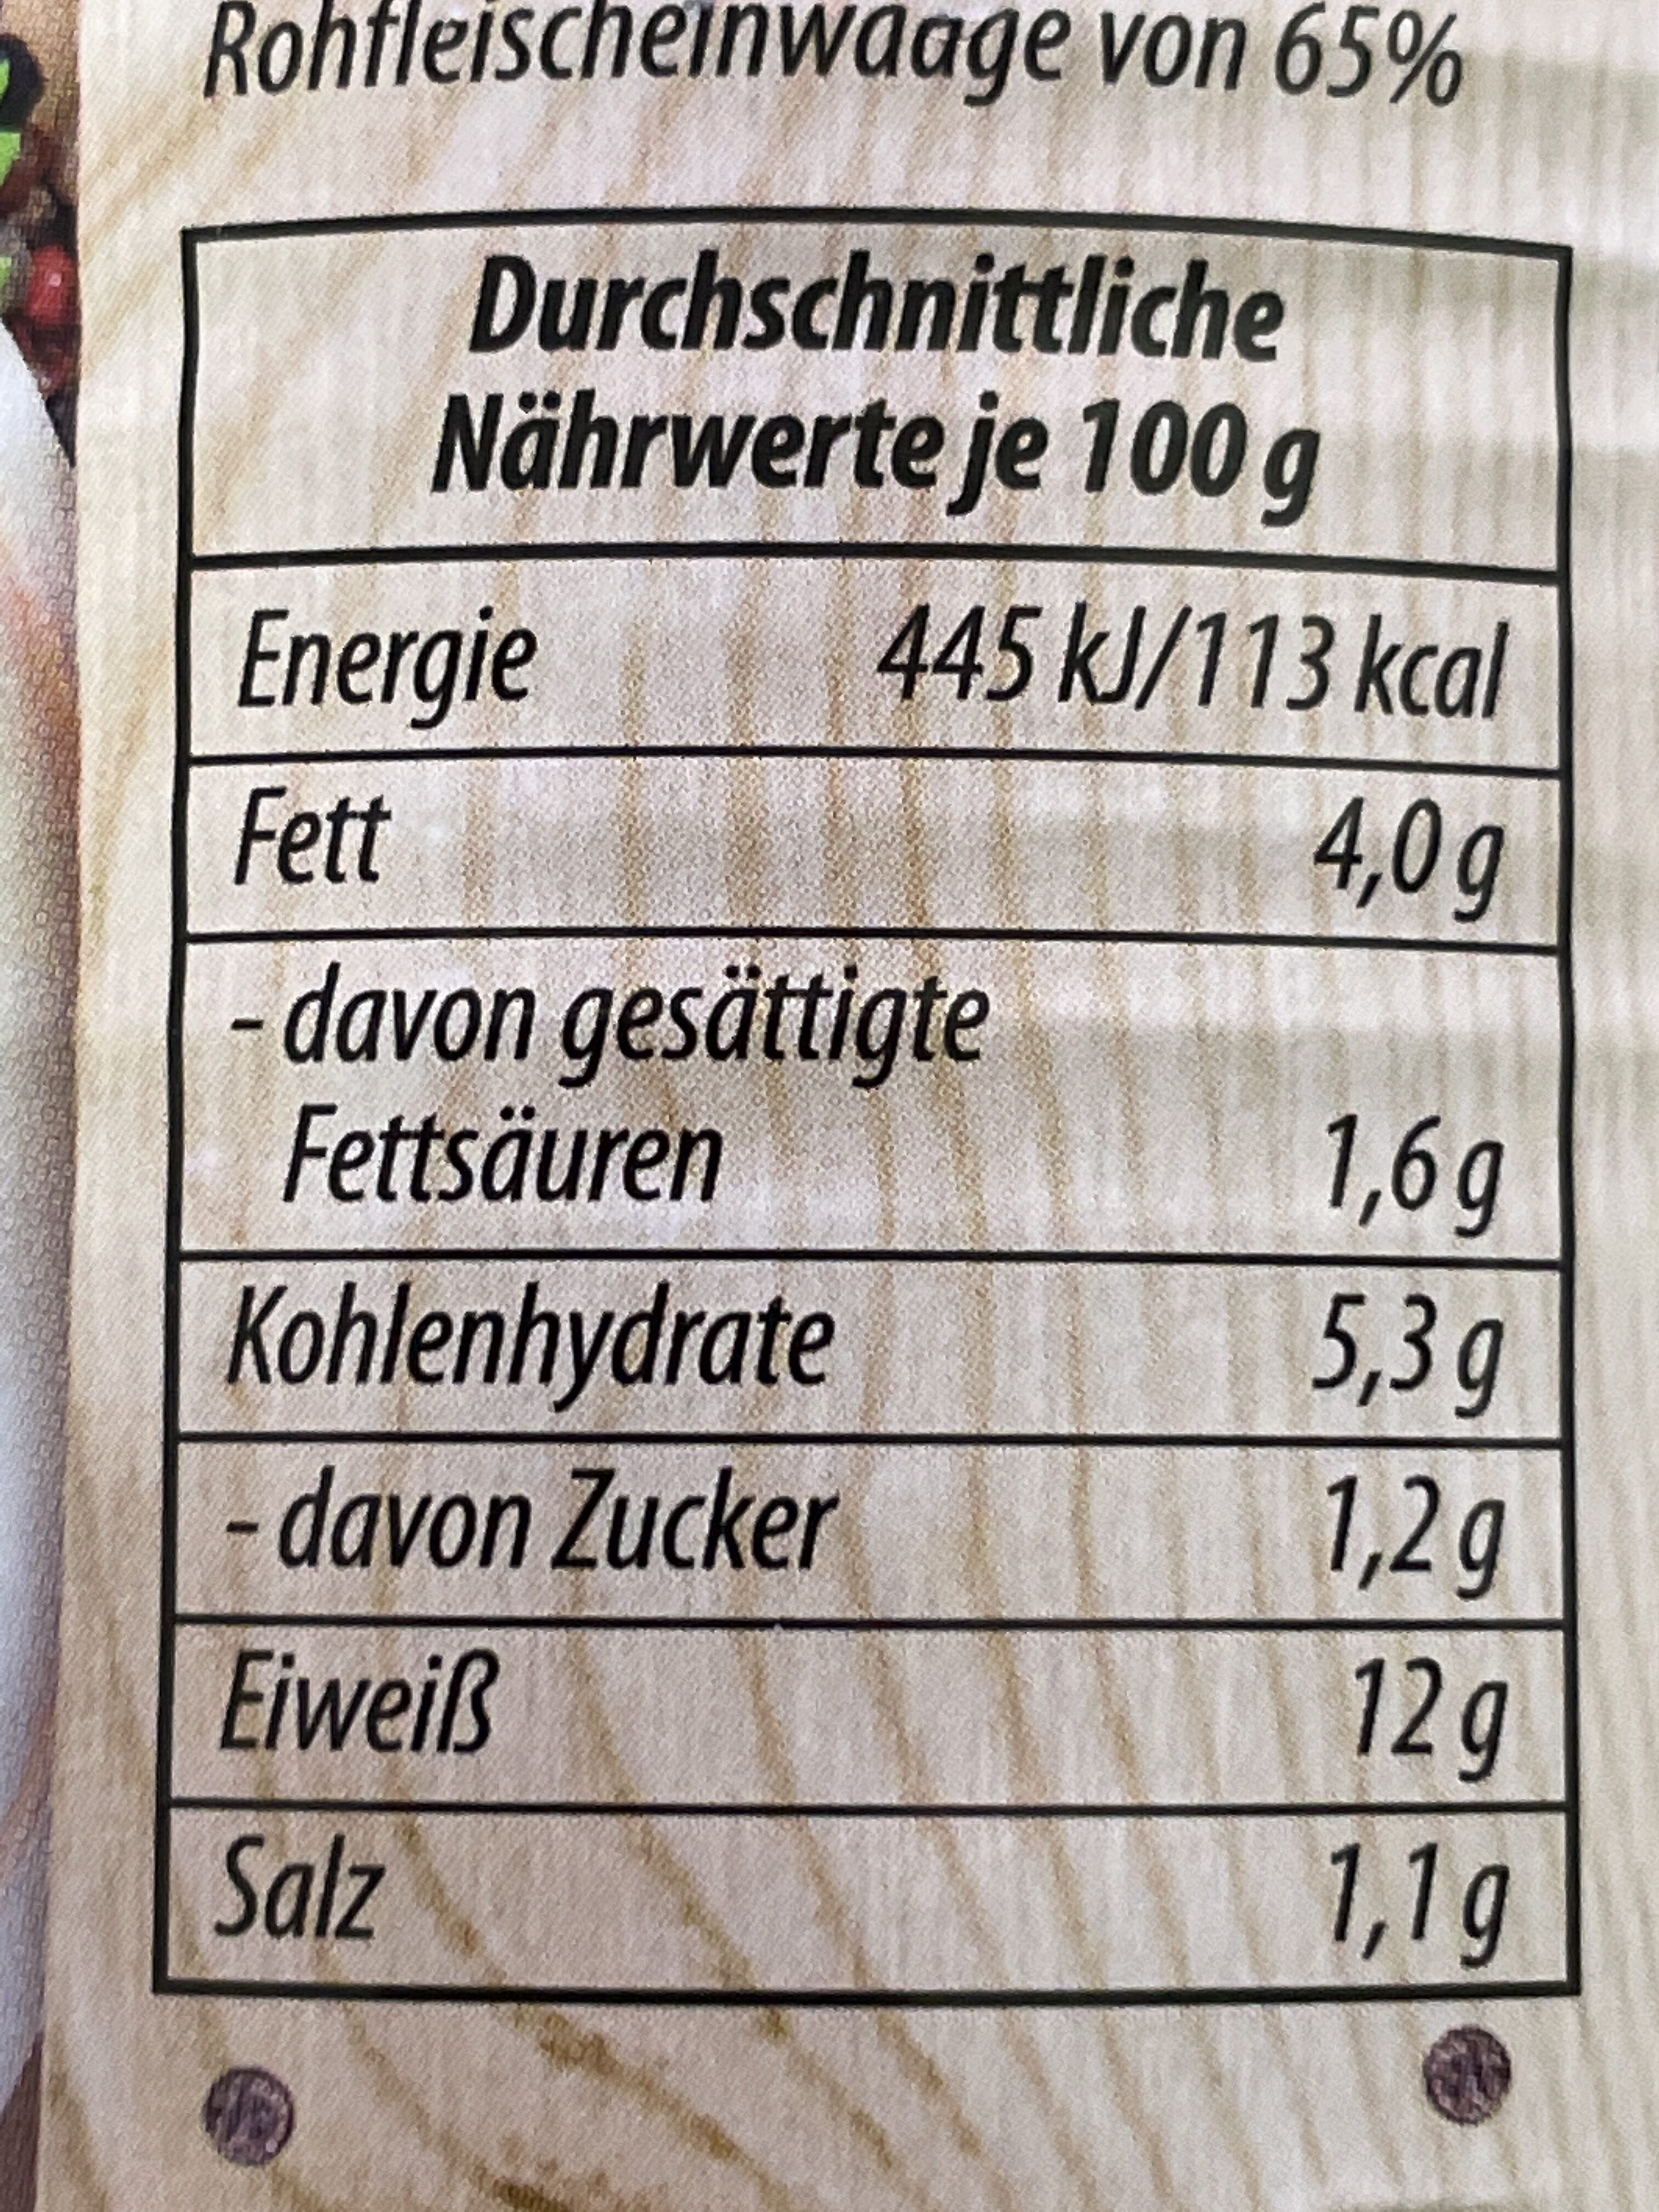 Schweinegulasch - Nutrition facts - de